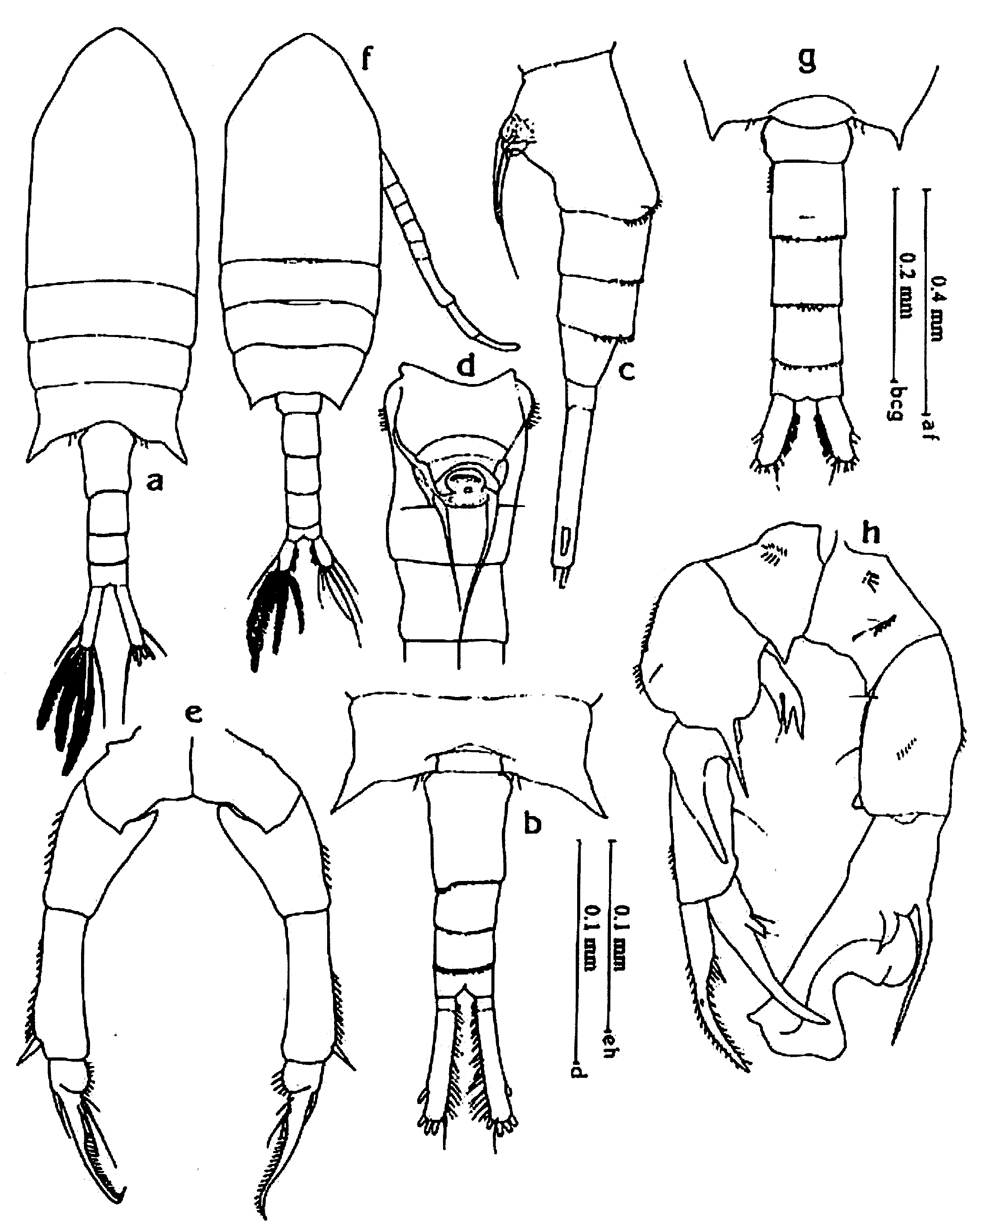 Espèce Pseudodiaptomus incisus - Planche 2 de figures morphologiques